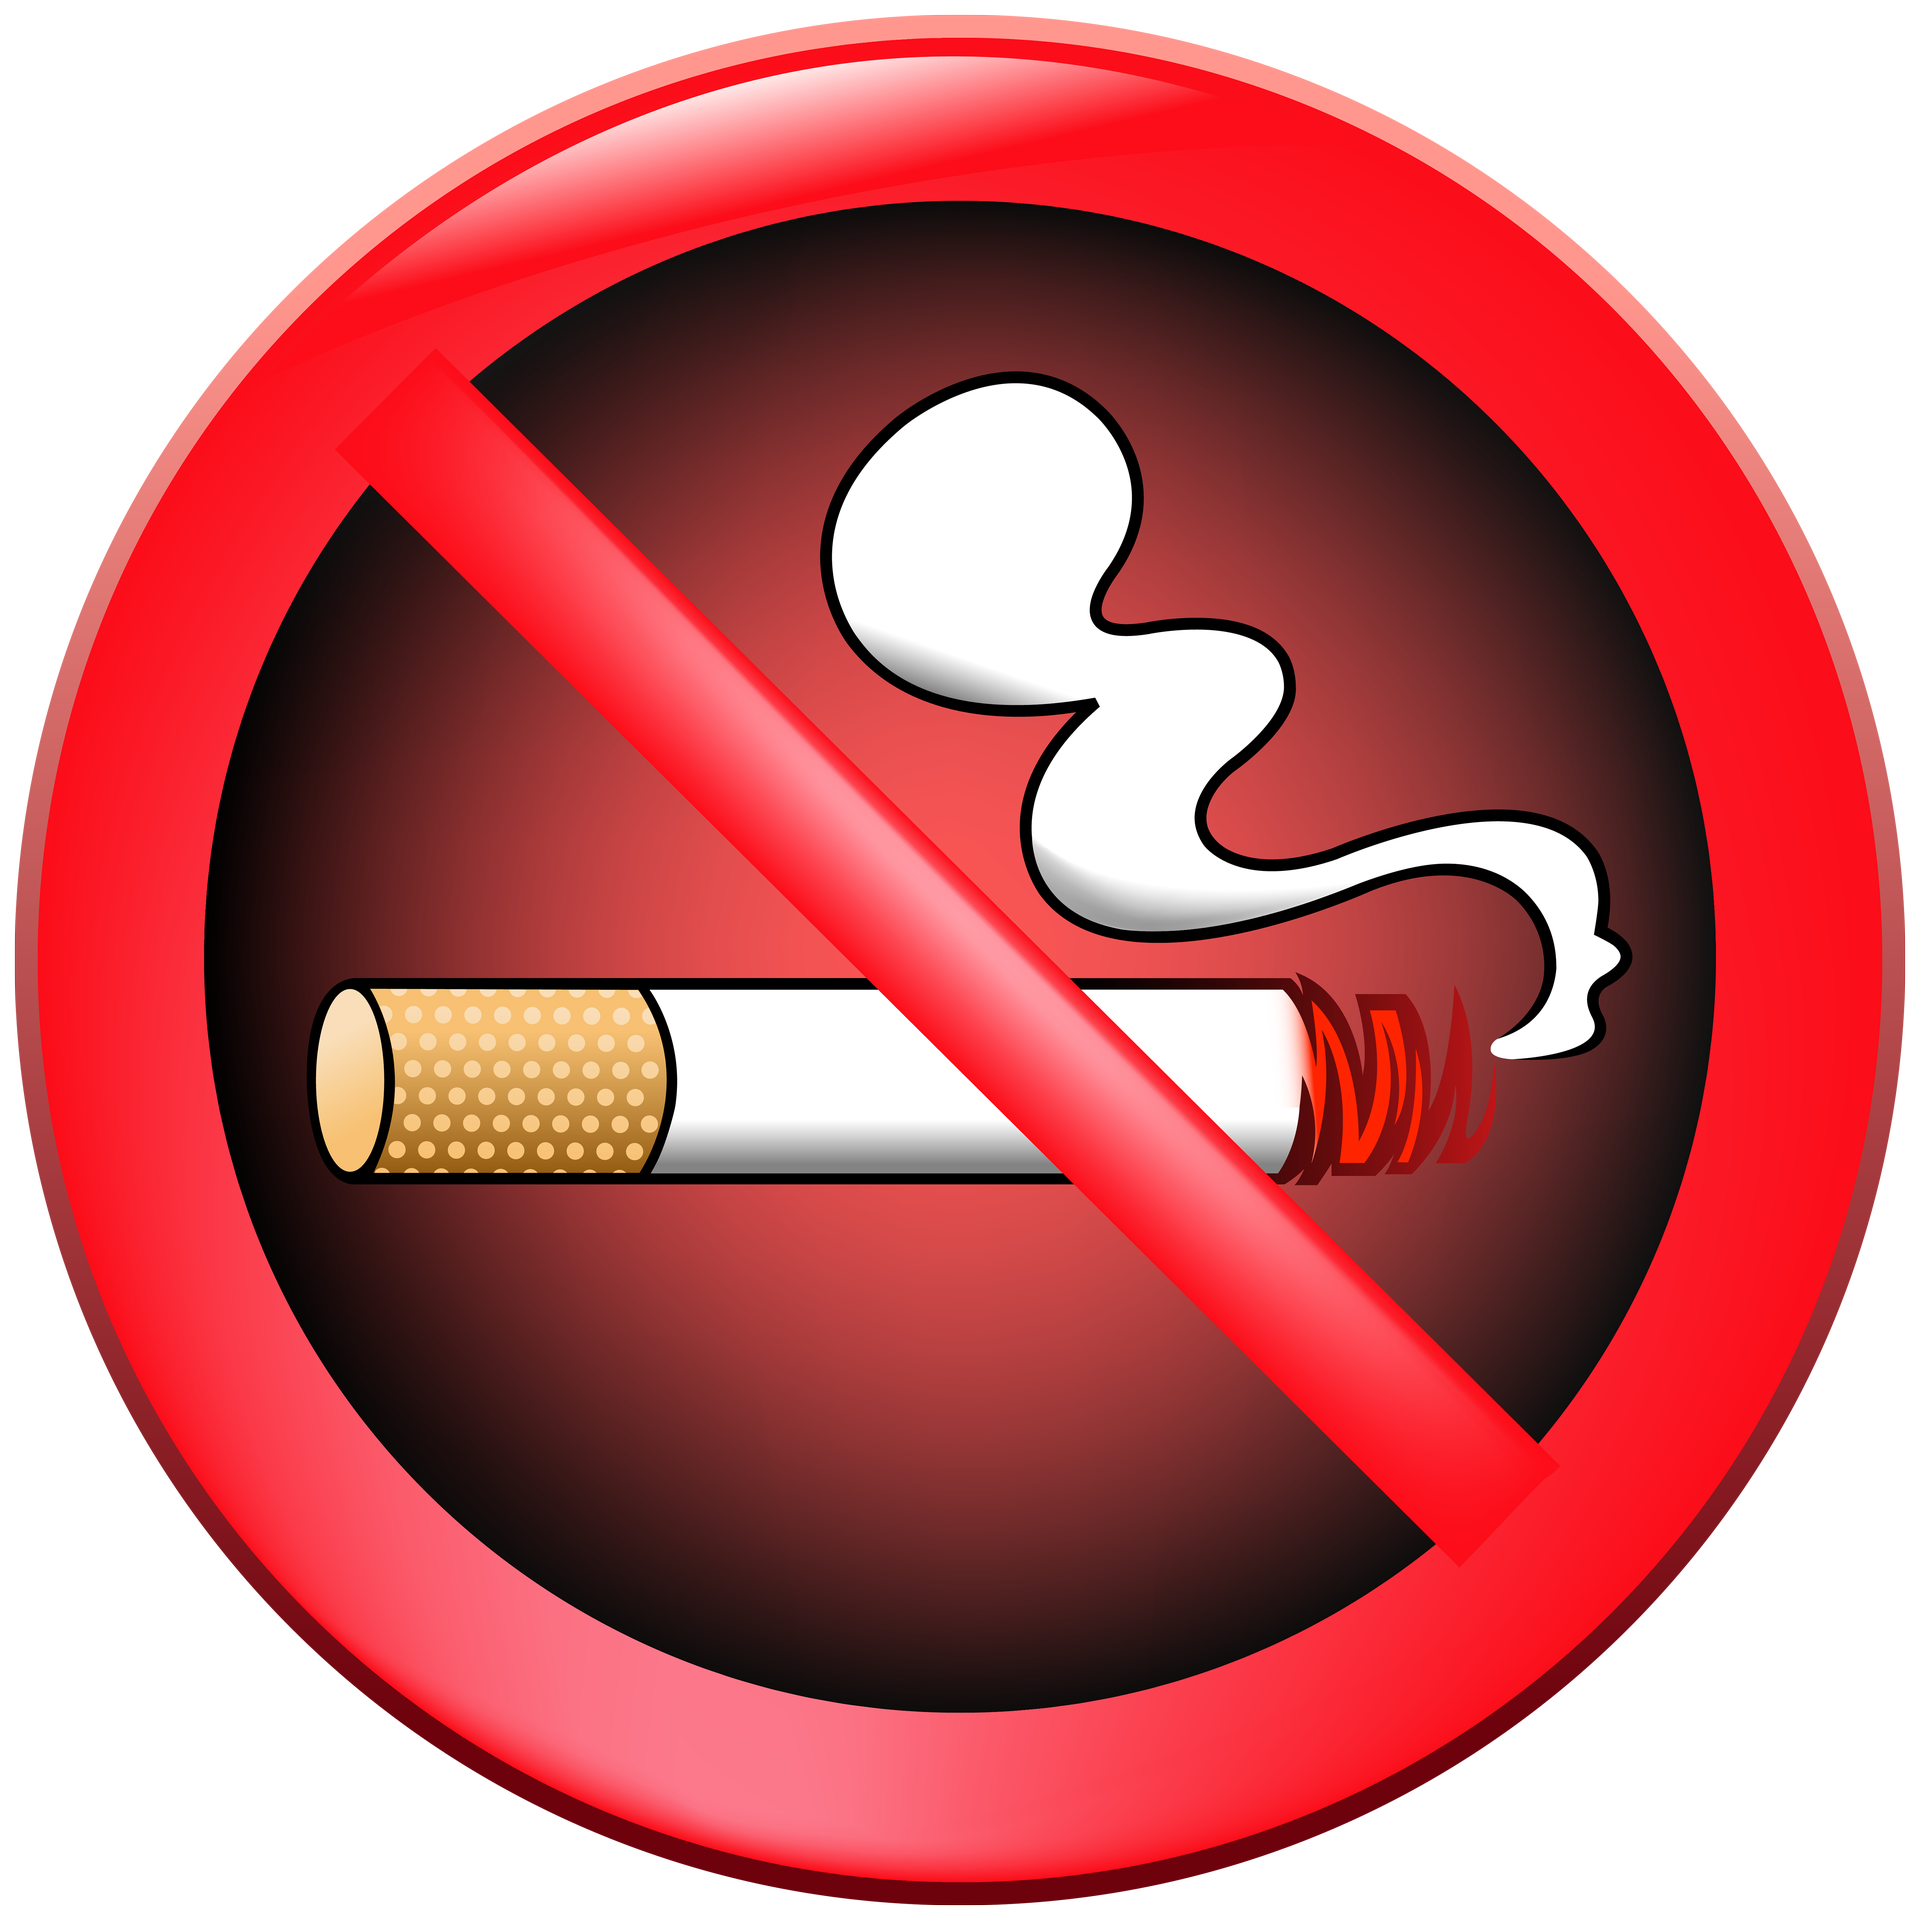 cigarette clipart non smoking